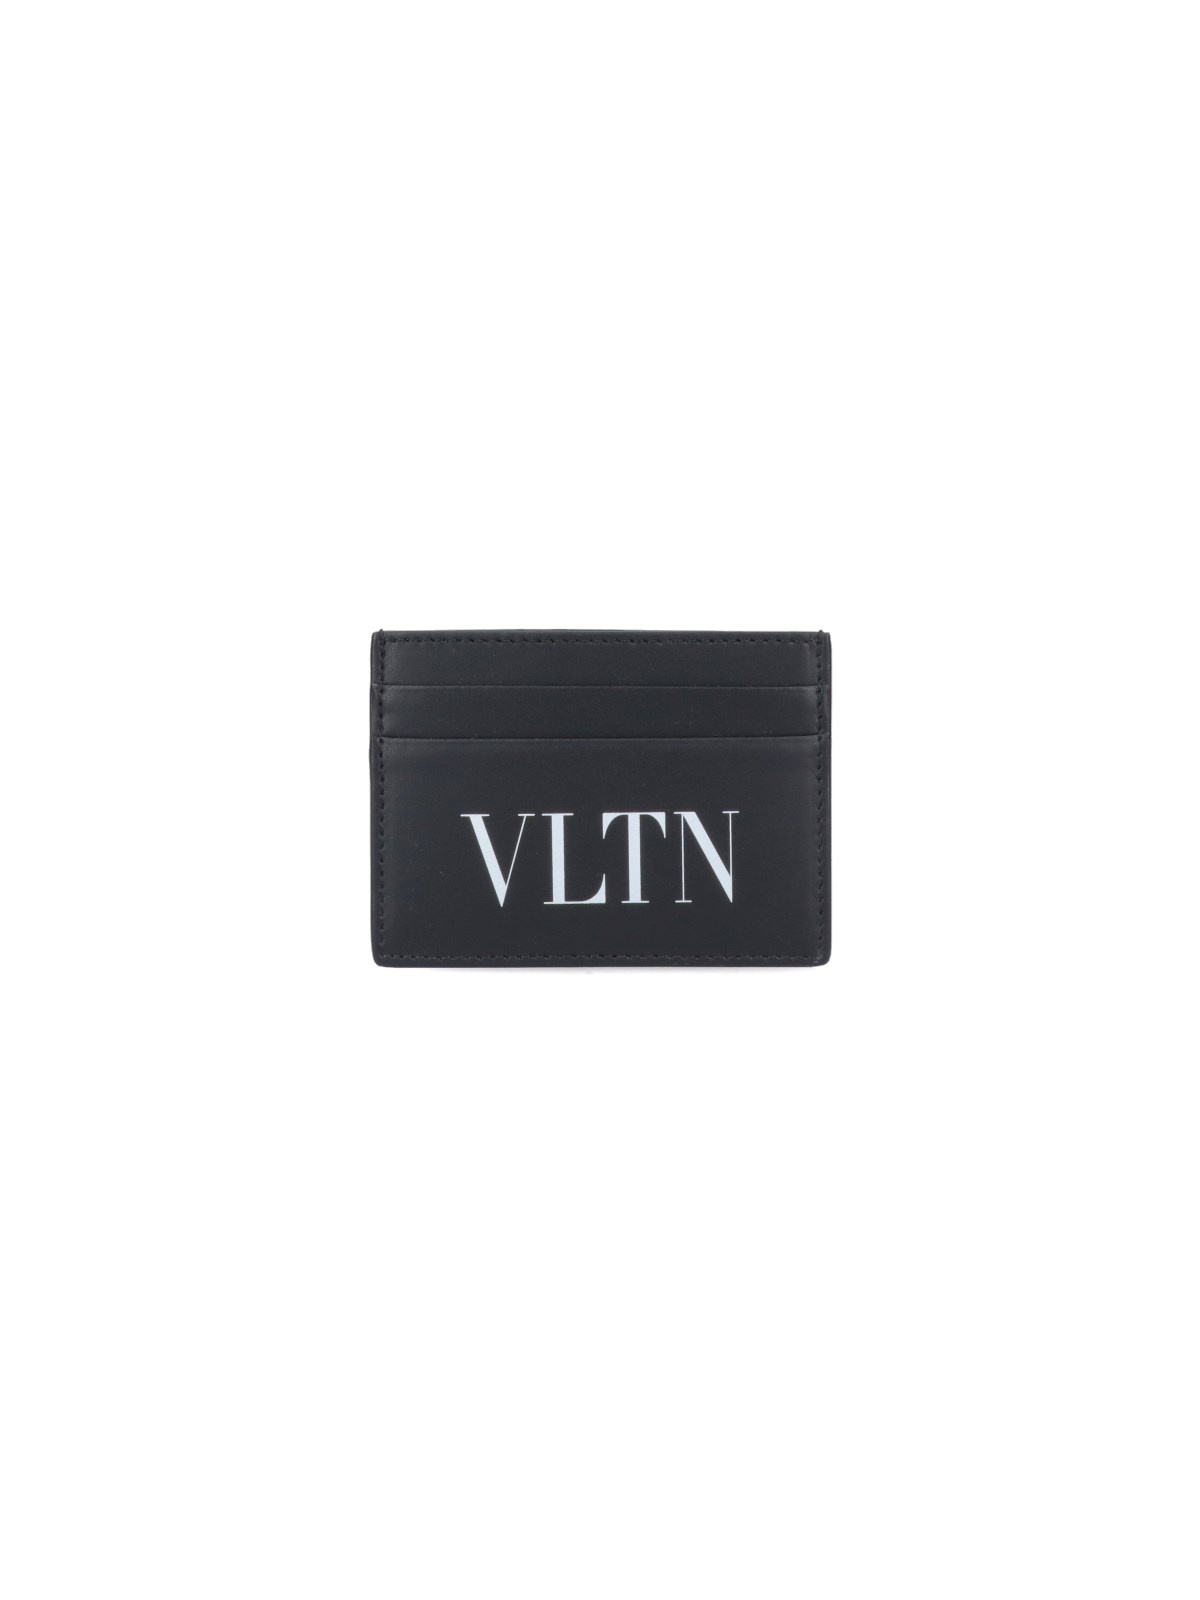 'VLTN' CARD HOLDER - 1